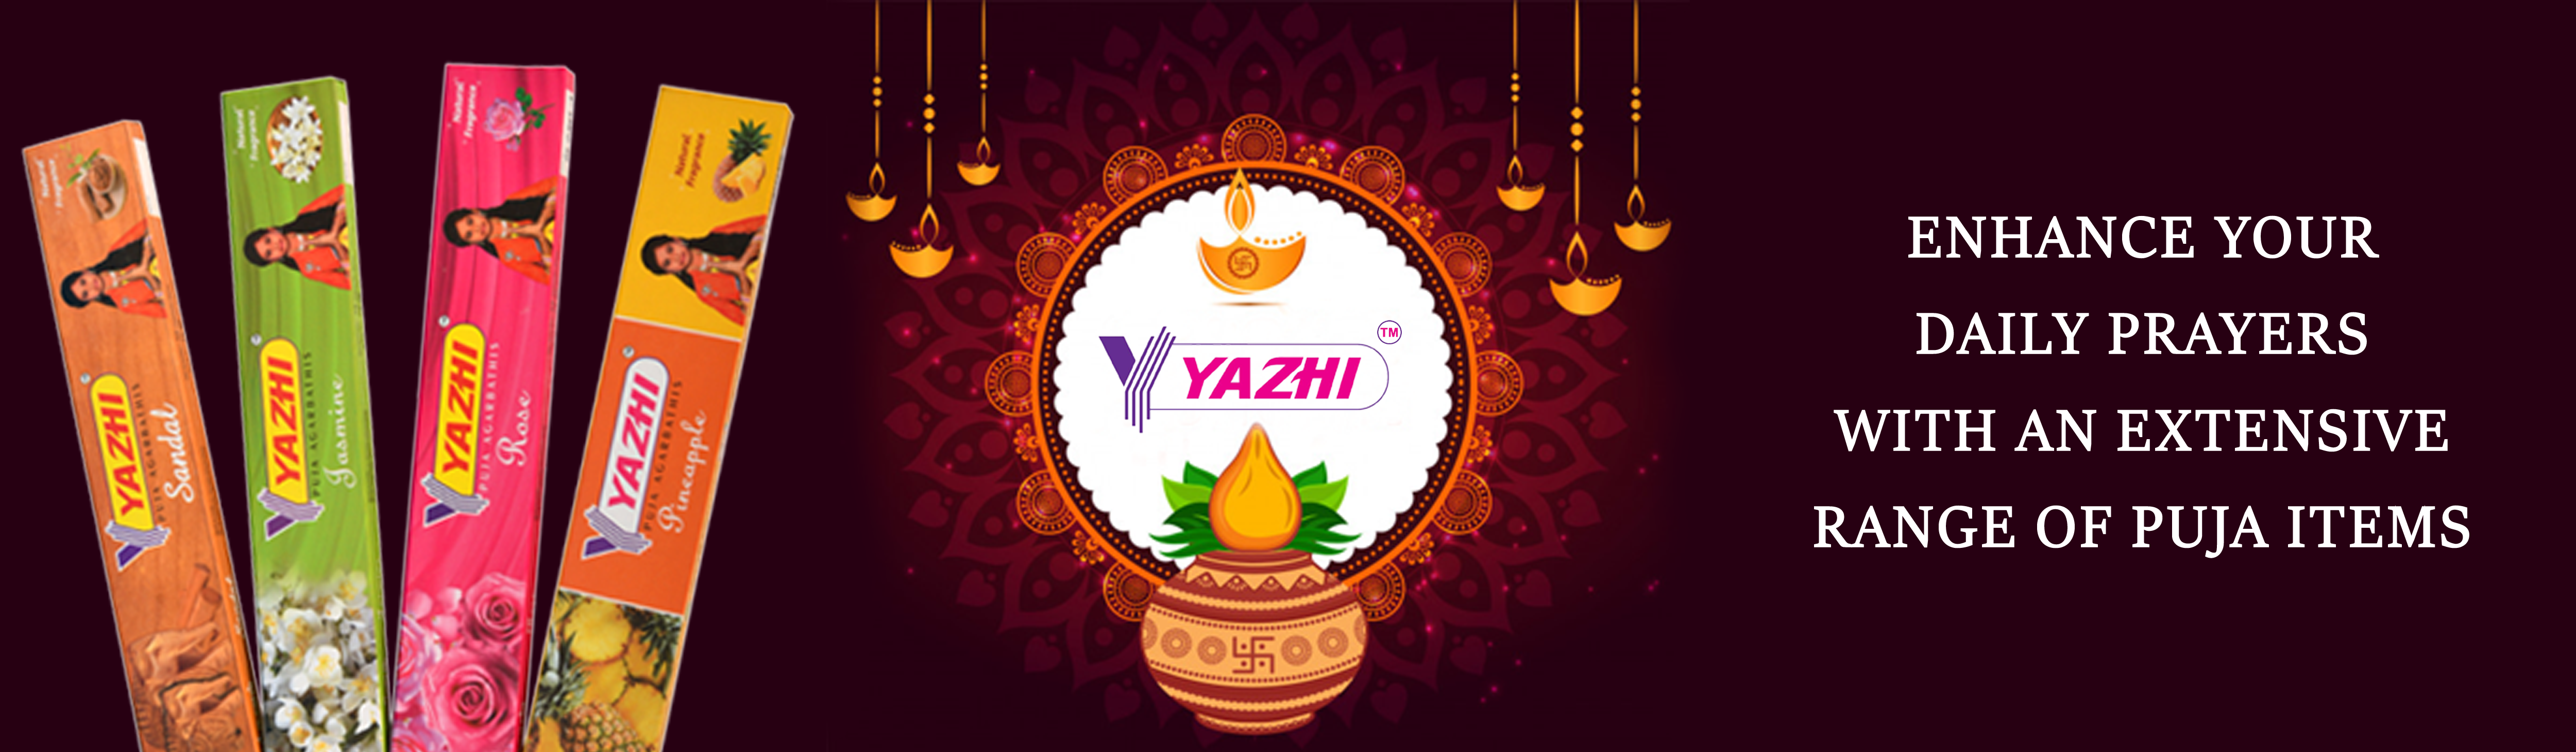 Yazhi Live Stream - YouTube